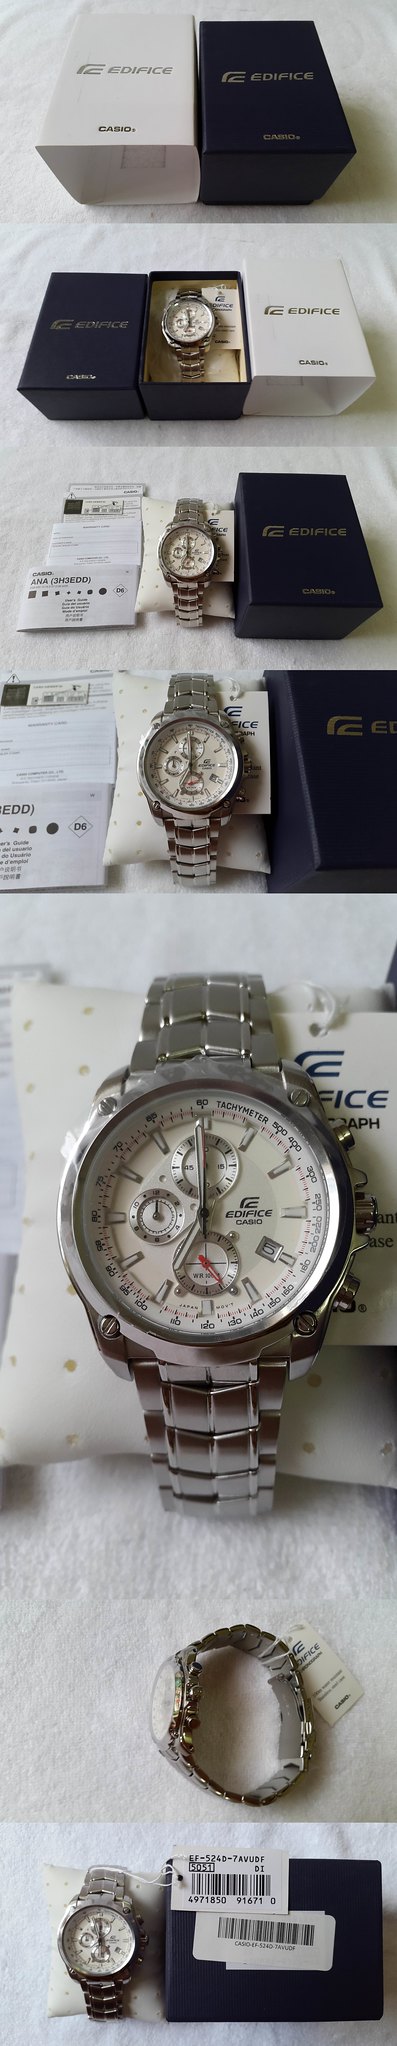 US AUTHENTIC WATCHES - Đồng hồ, mắt kính chính hãng Mỹ. - 38